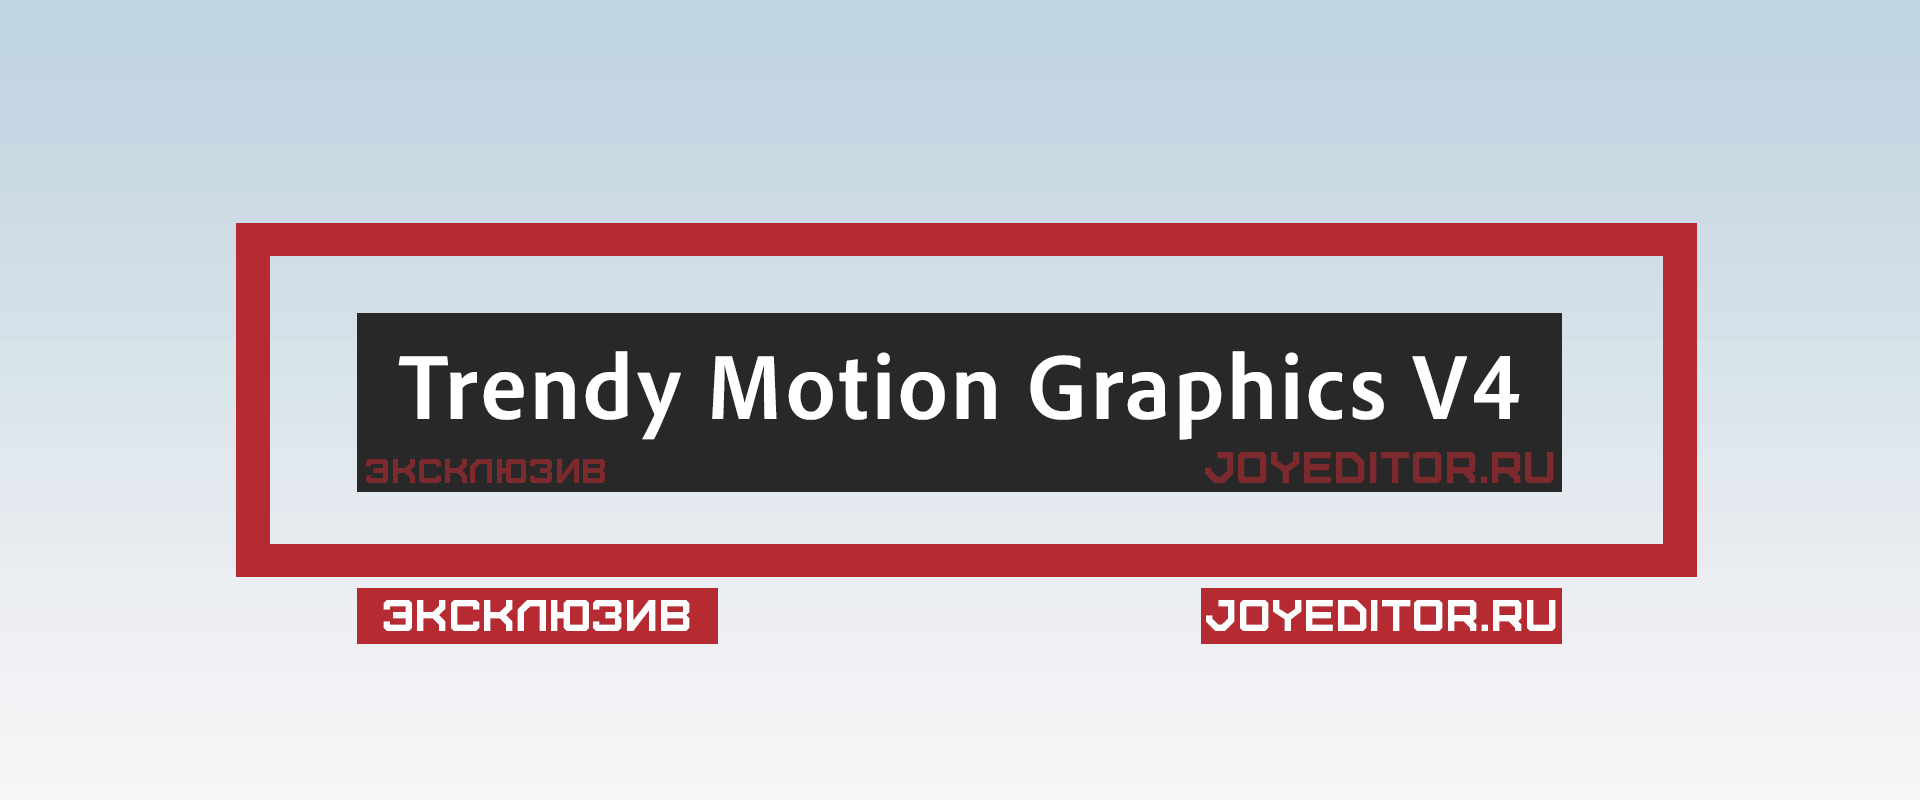 Trendy Motion Graphics V4